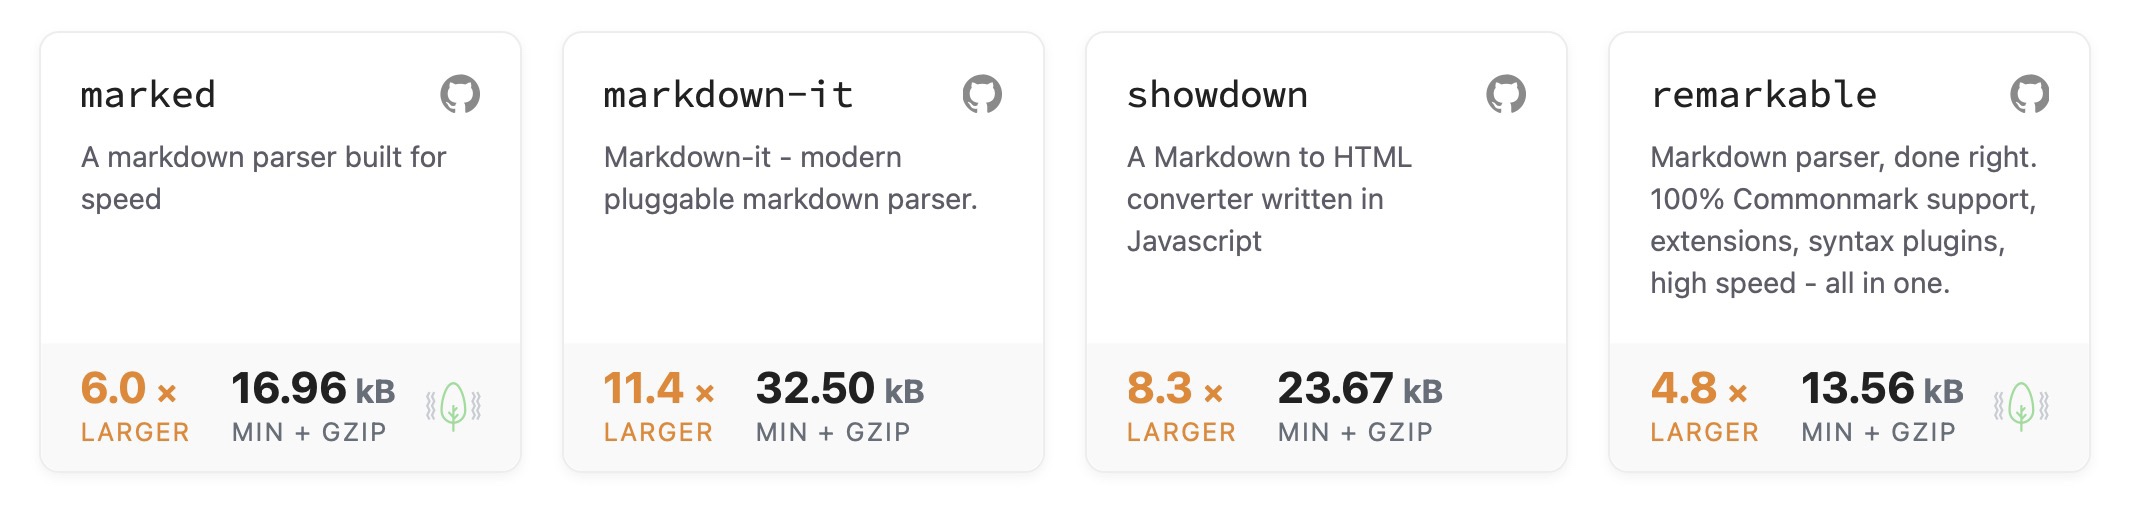 markdown-parsers.jpg